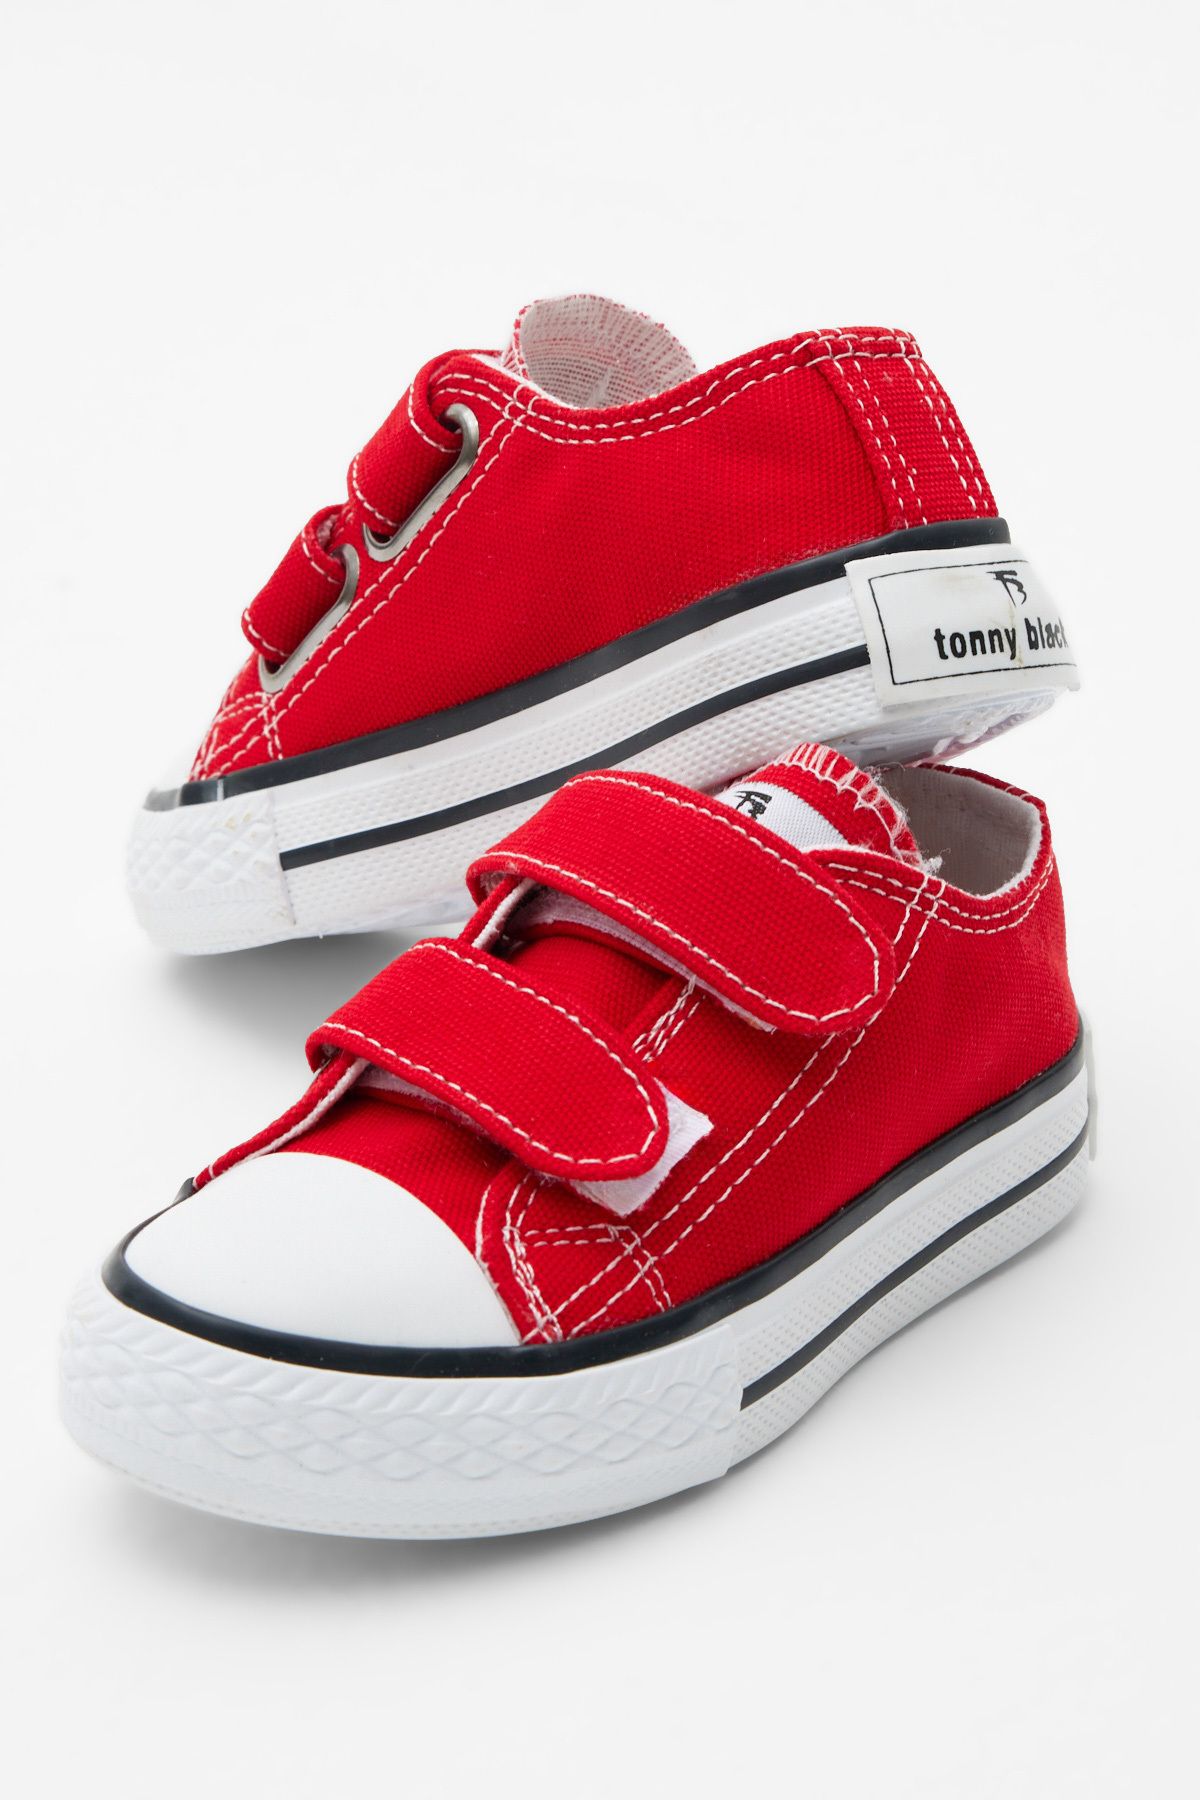 Tonny Black Çocuk Unisex Kırmızı Rahat Kalıp Cırtlı Sneaker